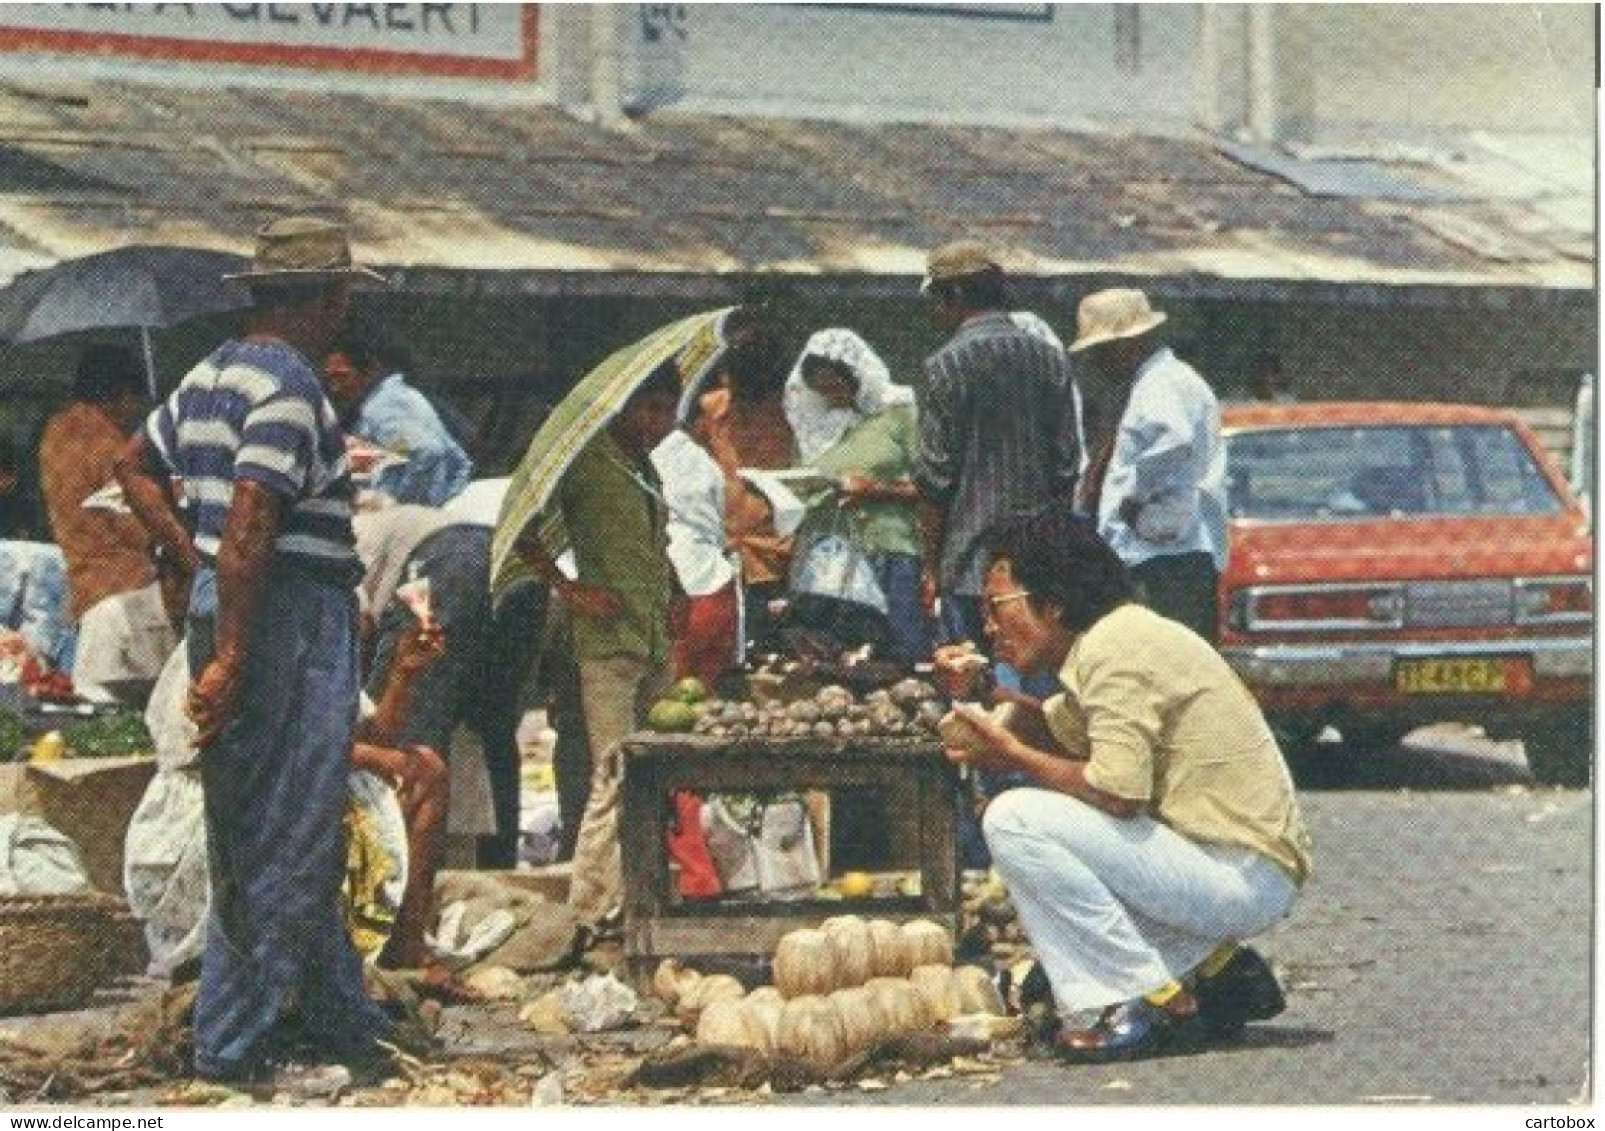 Suriname, Paramaribo, Centrale Markt  (Een Raster Op De Kaart Is Veroorzaakt Door Het Scannen; De Afbeelding Is Helder) - Suriname